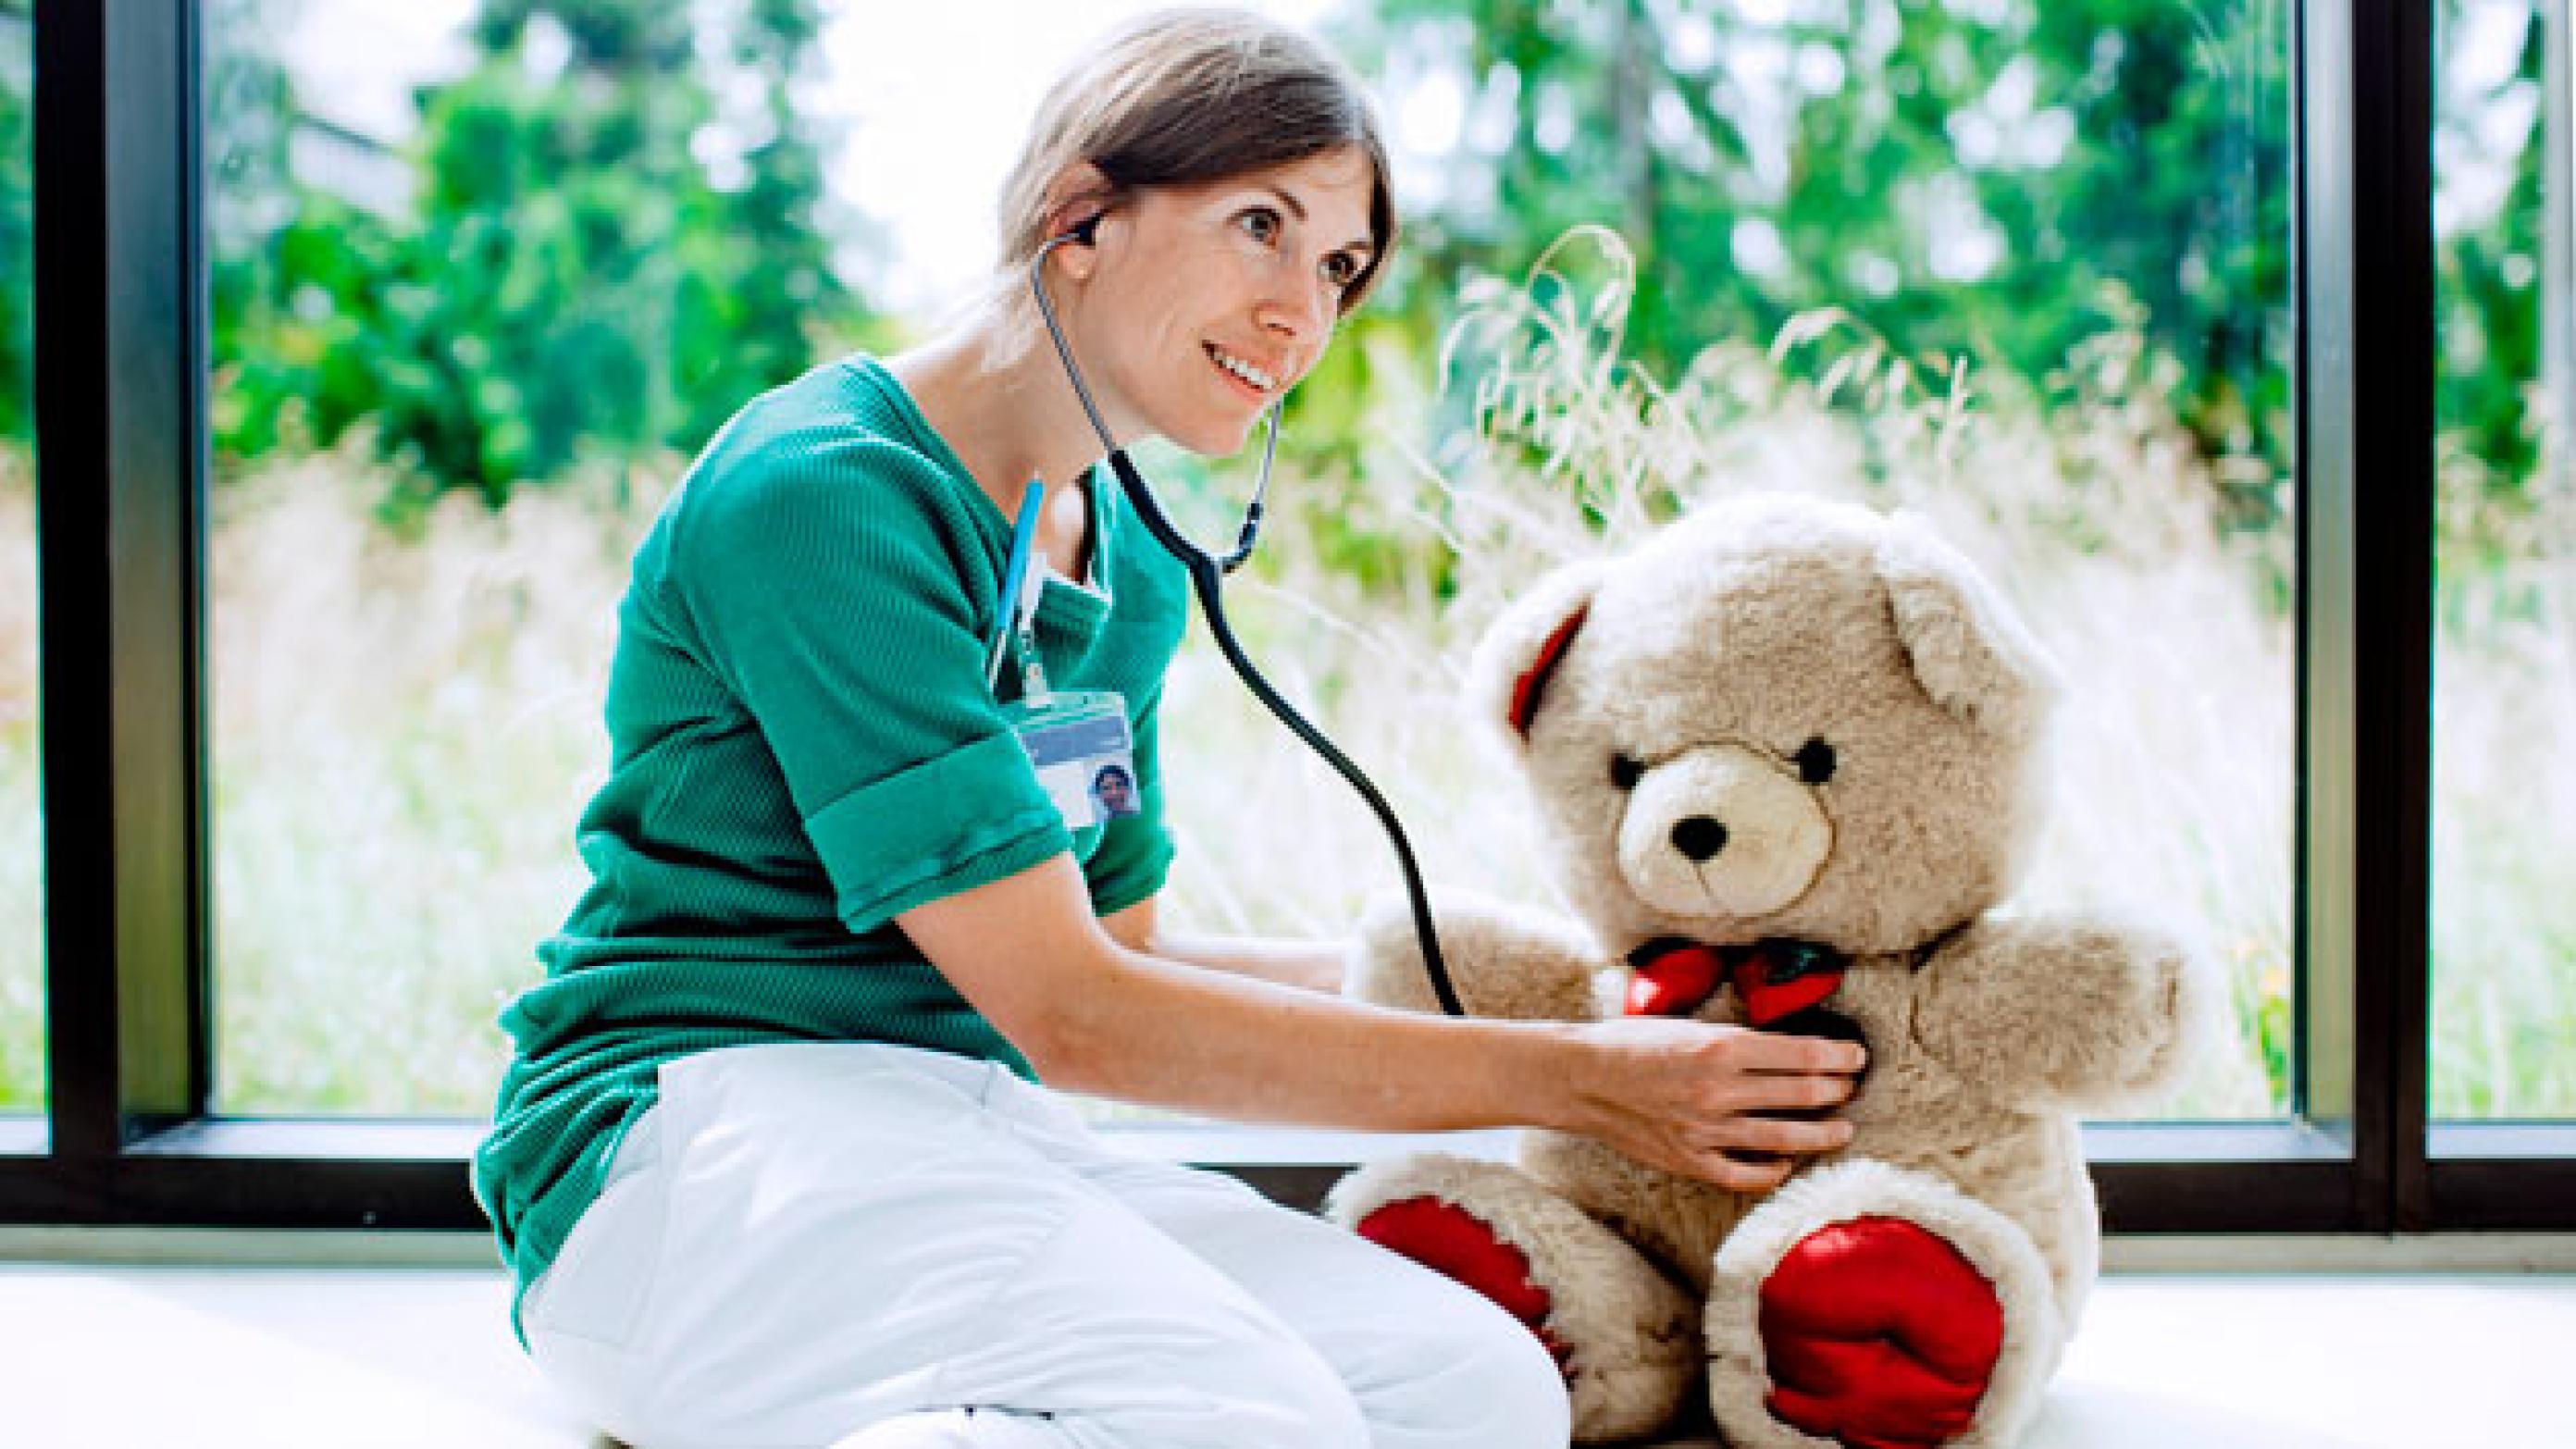 Sandra Meinich Juhl har udover sit arbejde som læge også en tjans som bamselæge på DR Ramasjang, hvor hun hjælper bamser, der er syge eller er kommet til skade. Hun behandler bamser, som hun ville behandle børn, og dermed får børnene et indblik i, hvordan det er at komme på hospitalet. Foto: Claus Boesen.